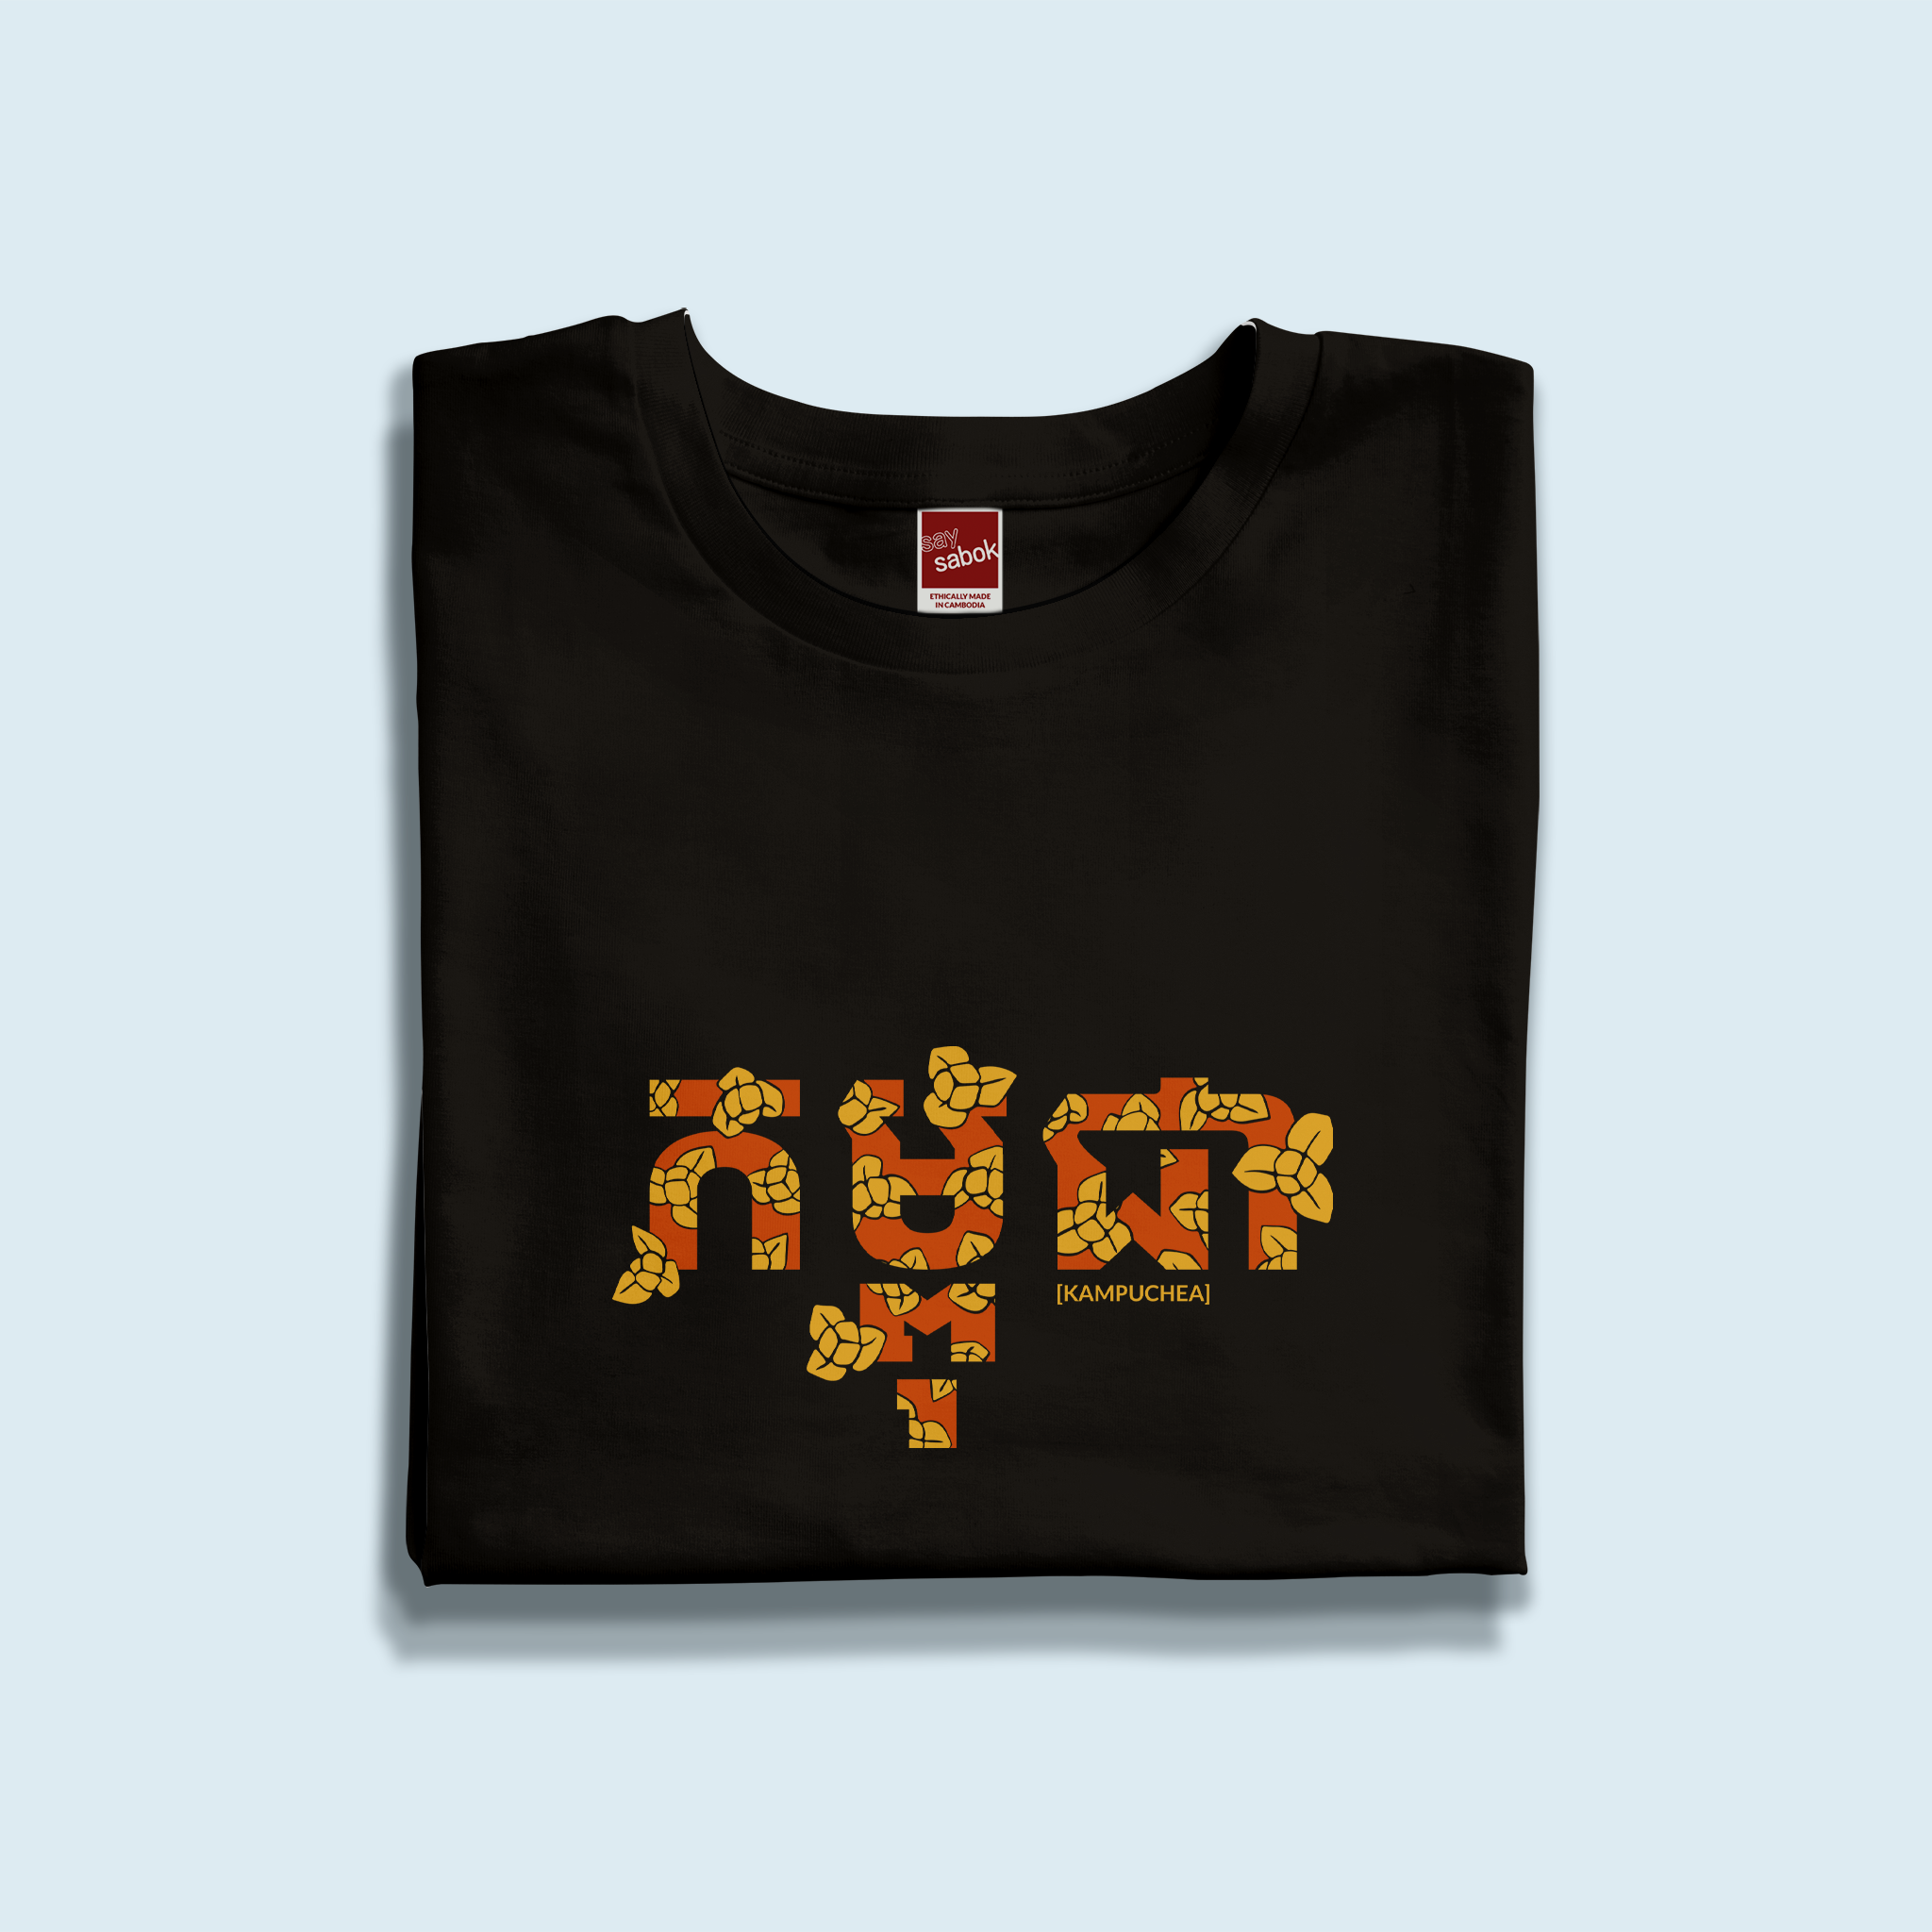 "Kampuchea" Men's T-Shirt - SATU